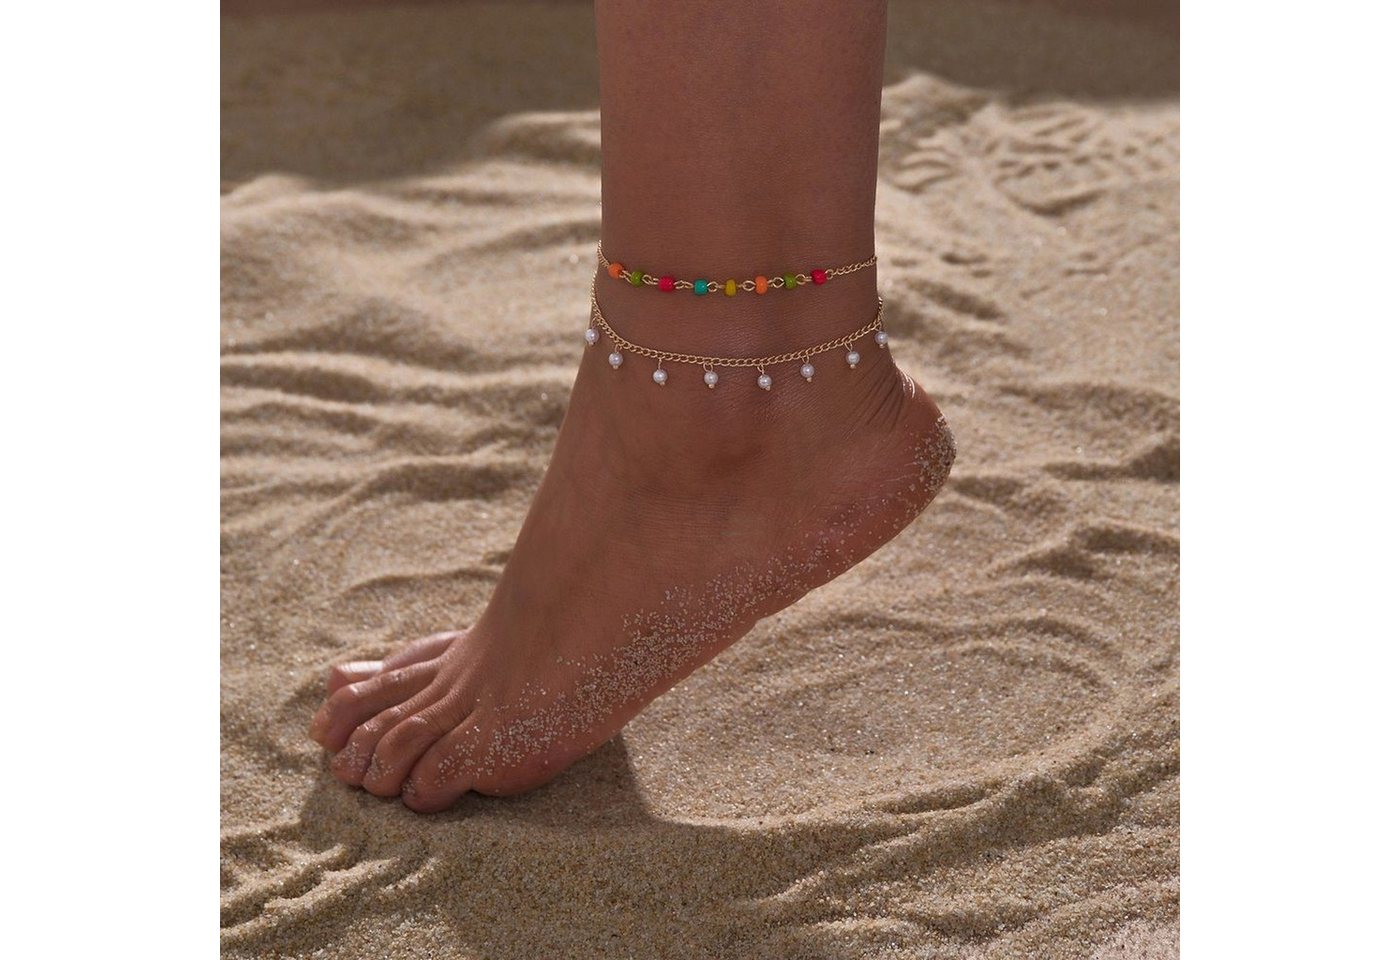 YRIIOMO Fußkette Böhmischer Urlaub am Meer farbige Perlen, Imitationsperle Quaste doppellagiger Fußkettchen-Schmuck von YRIIOMO